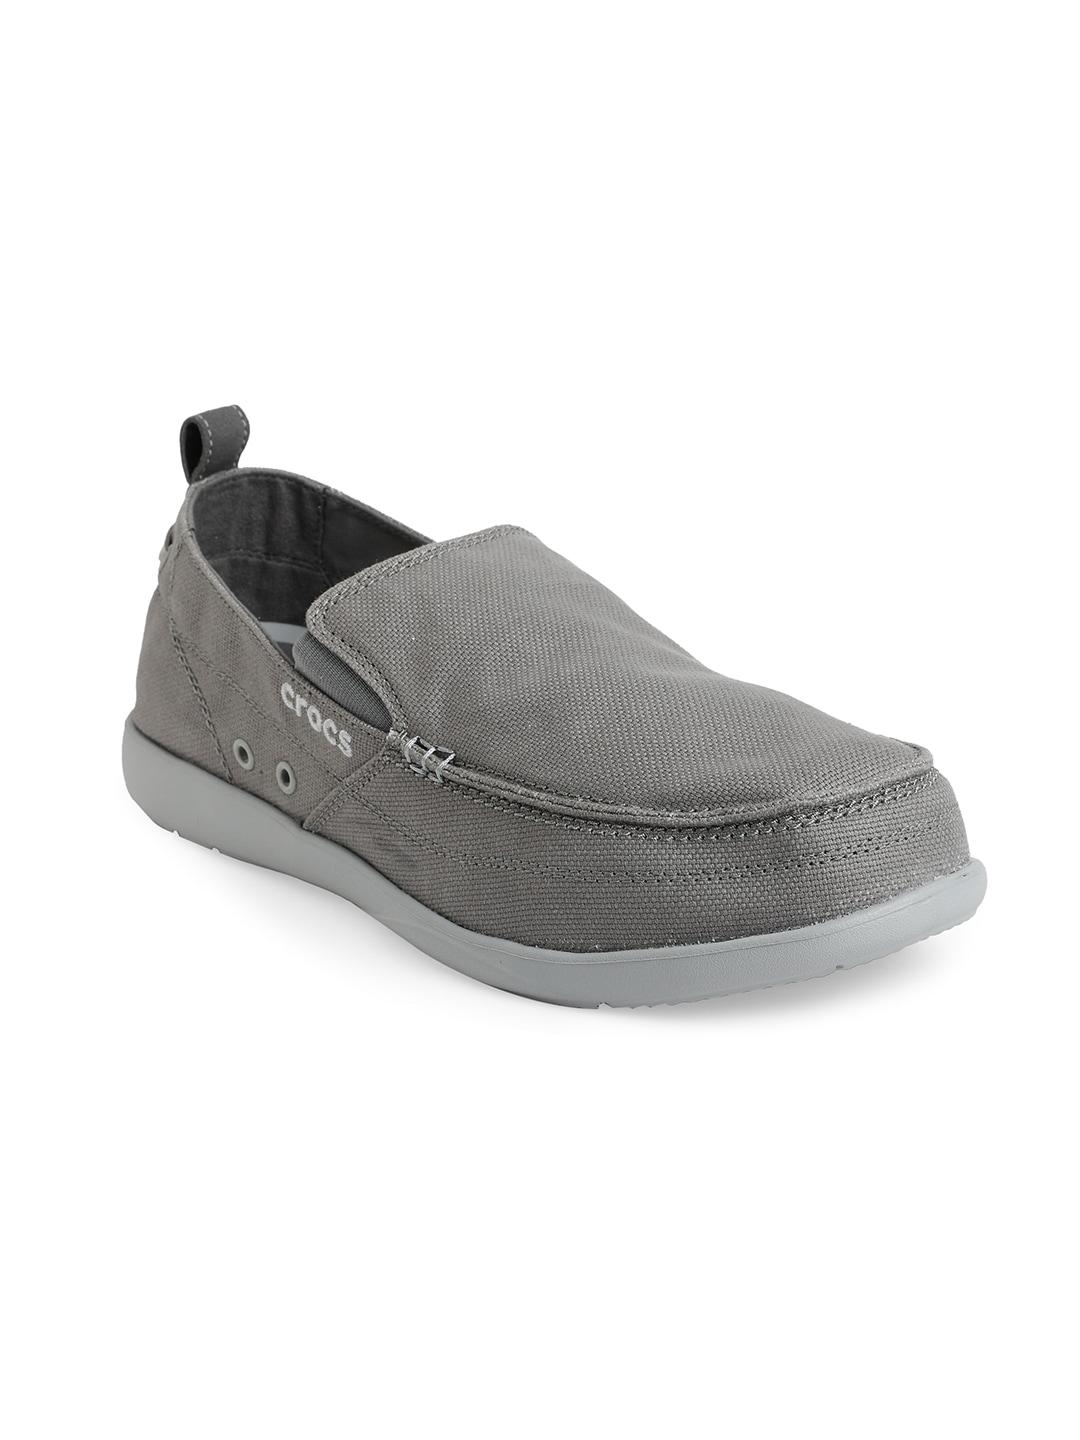 crocs-men-grey-woven-design-croslite-loafers